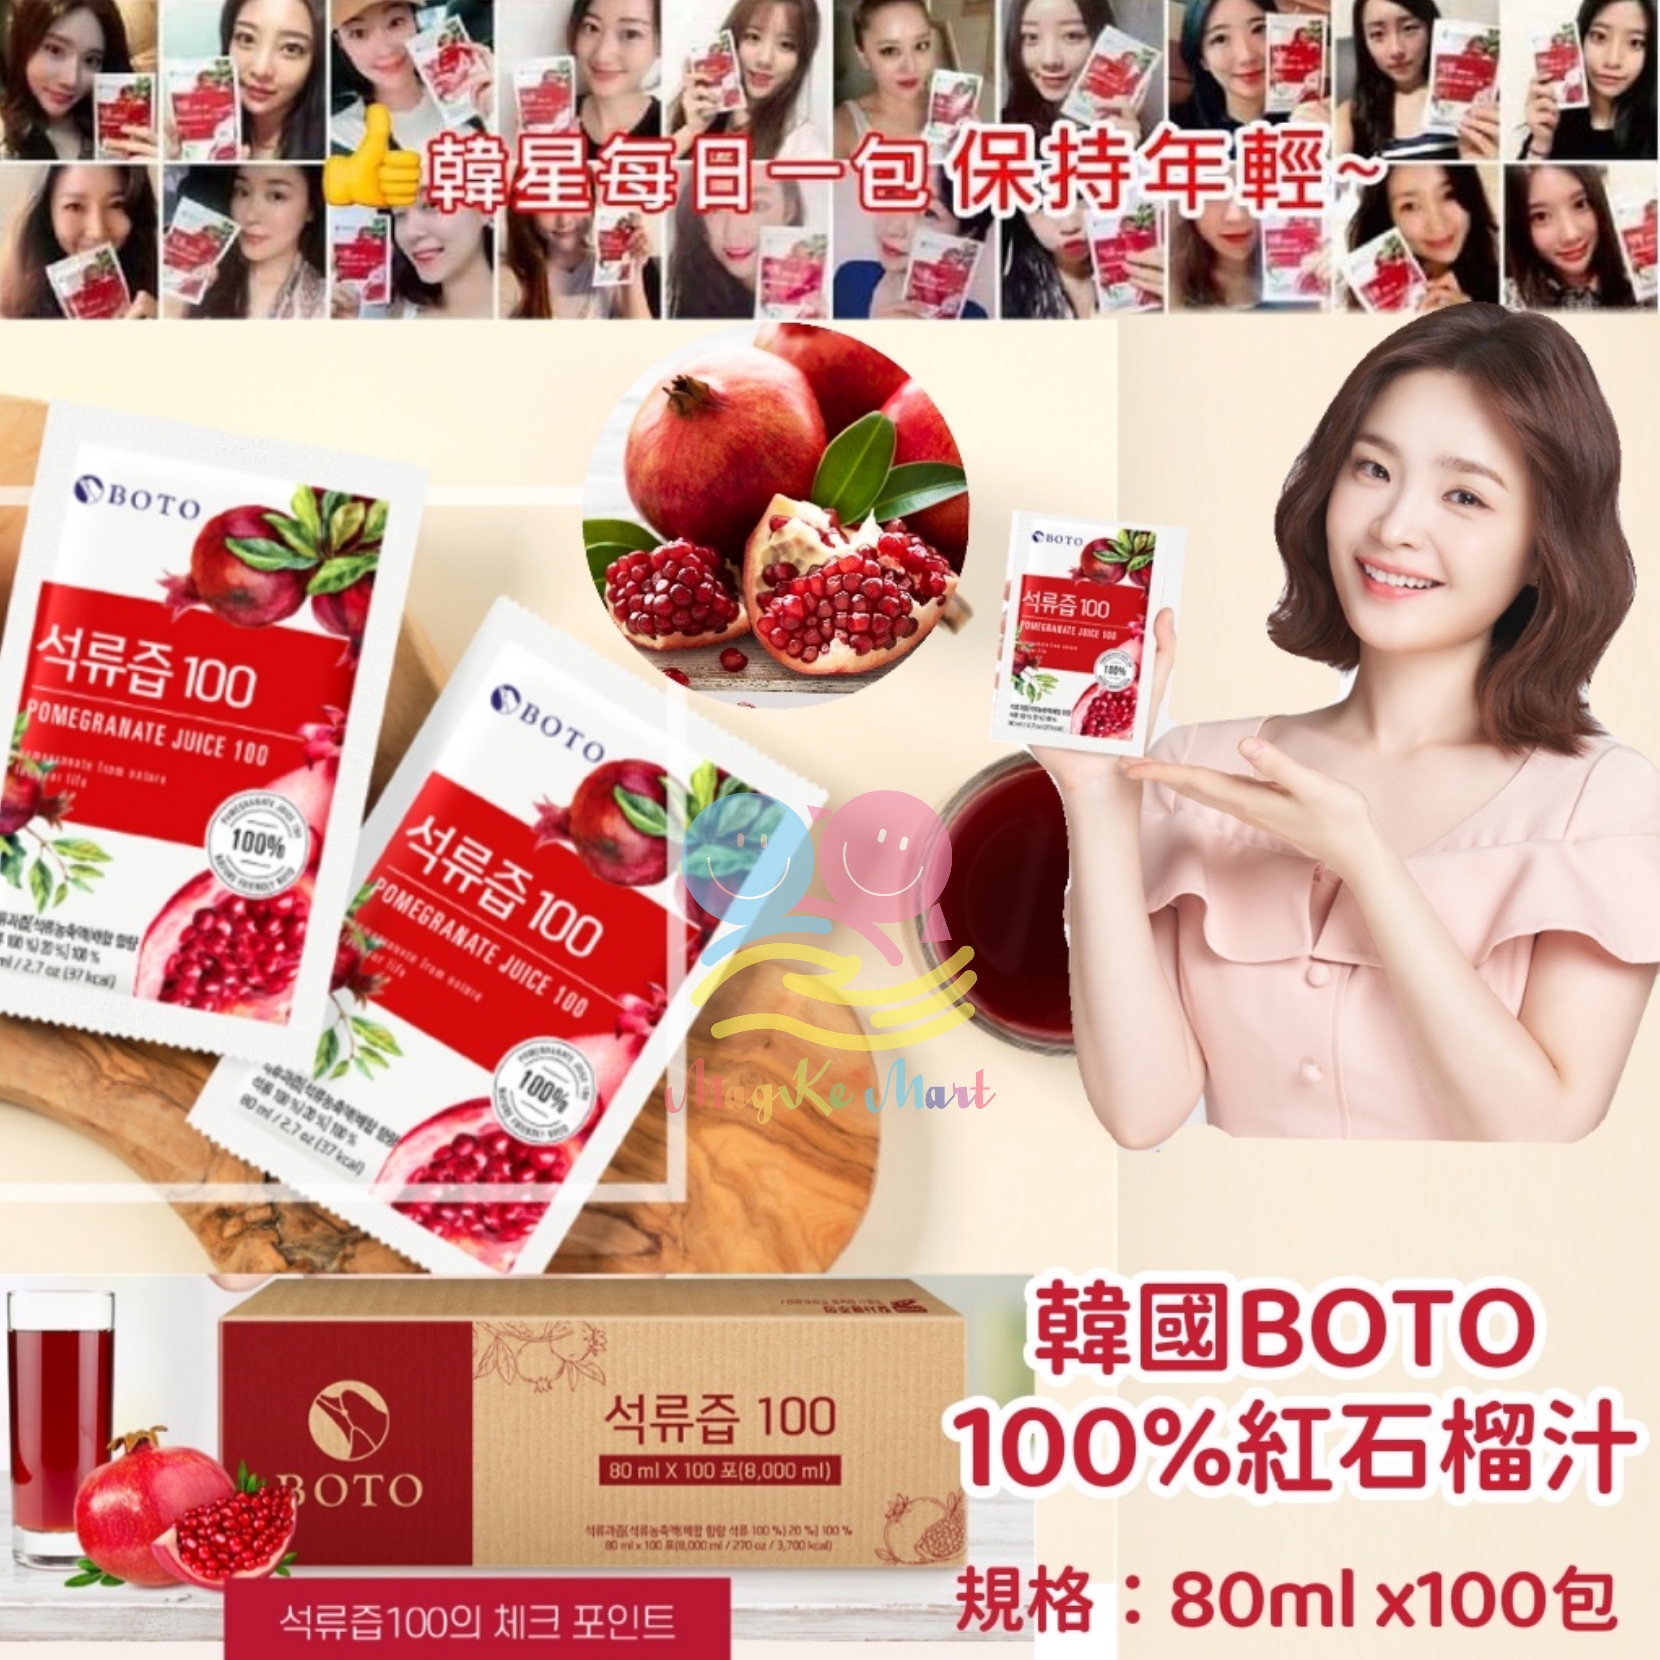 韓國 BOTO 100% 紅石榴汁巨無霸裝 (1盒100包)